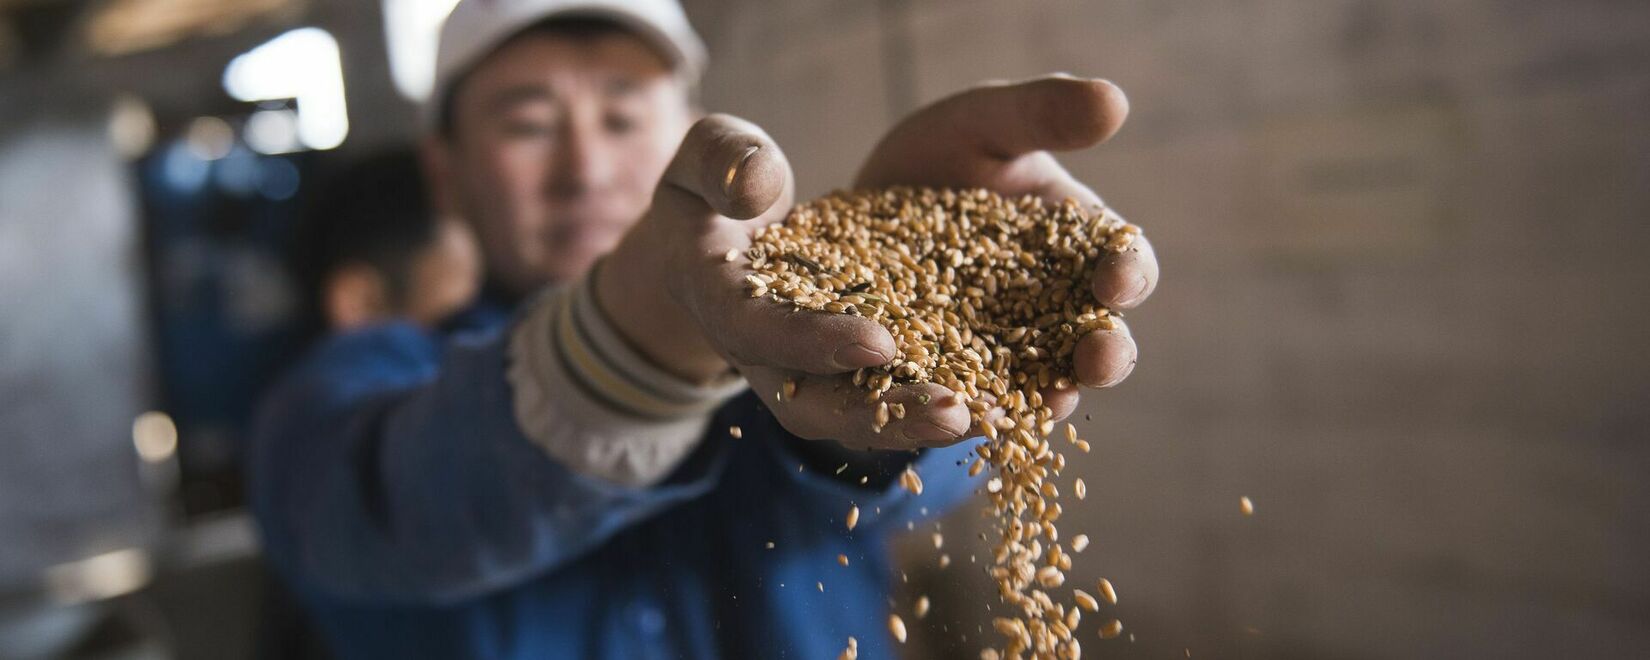 До 10 сентября из Казахстана в КНР нельзя вывозить зерно, продукты перемола и масличные в контейнерах